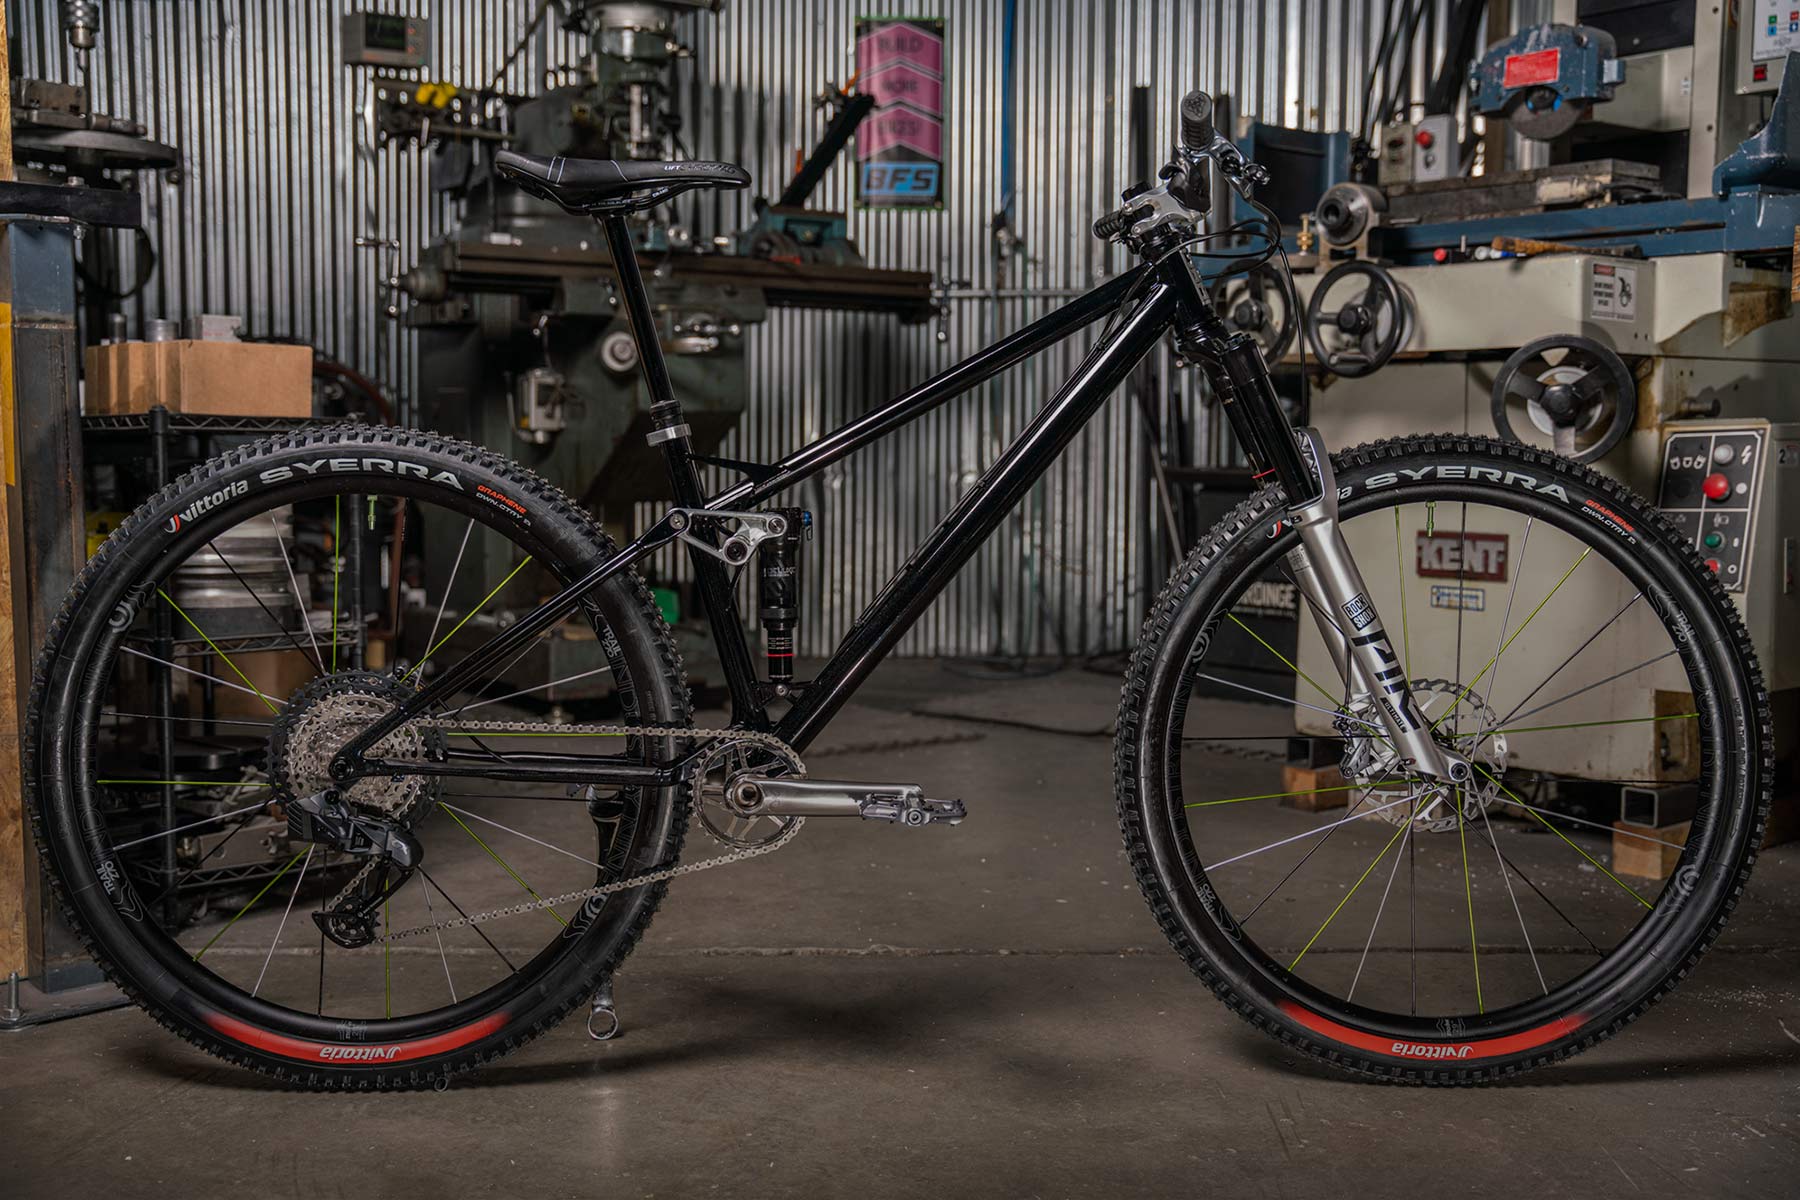 Reeb SST prototype lightweight steel 120mm full-suspension trail mountain bike, complete Sneak Peek